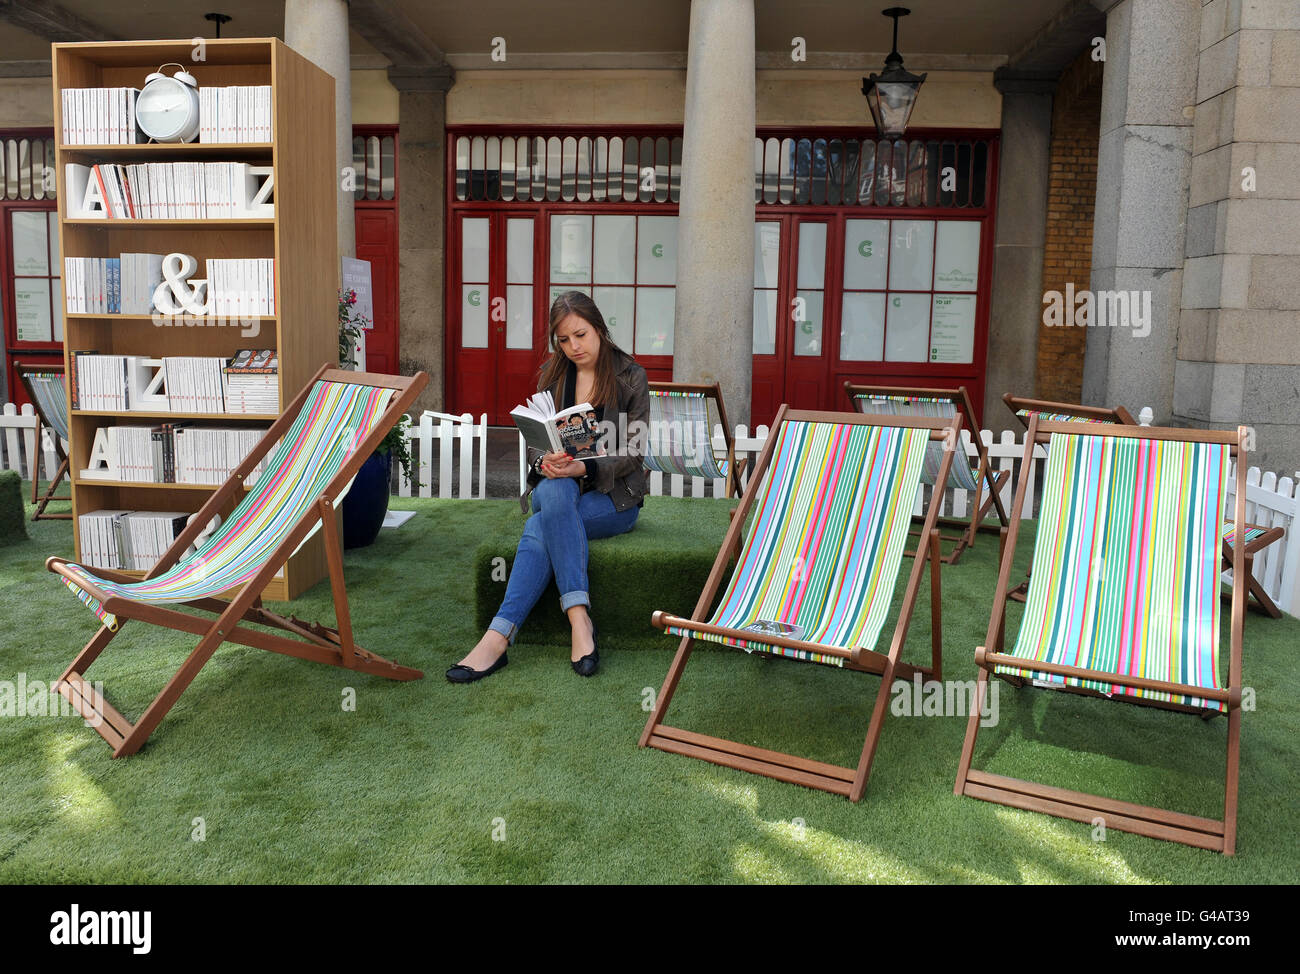 Felicity Harris 24 aus London nutzt Covent Garden's Lawn Library während des National 'Share-A-Story' Monats in Partnerschaft mit Penguin Modern Classics, das in diesem Jahr sein 50-jähriges Jubiläum feiert. Stockfoto